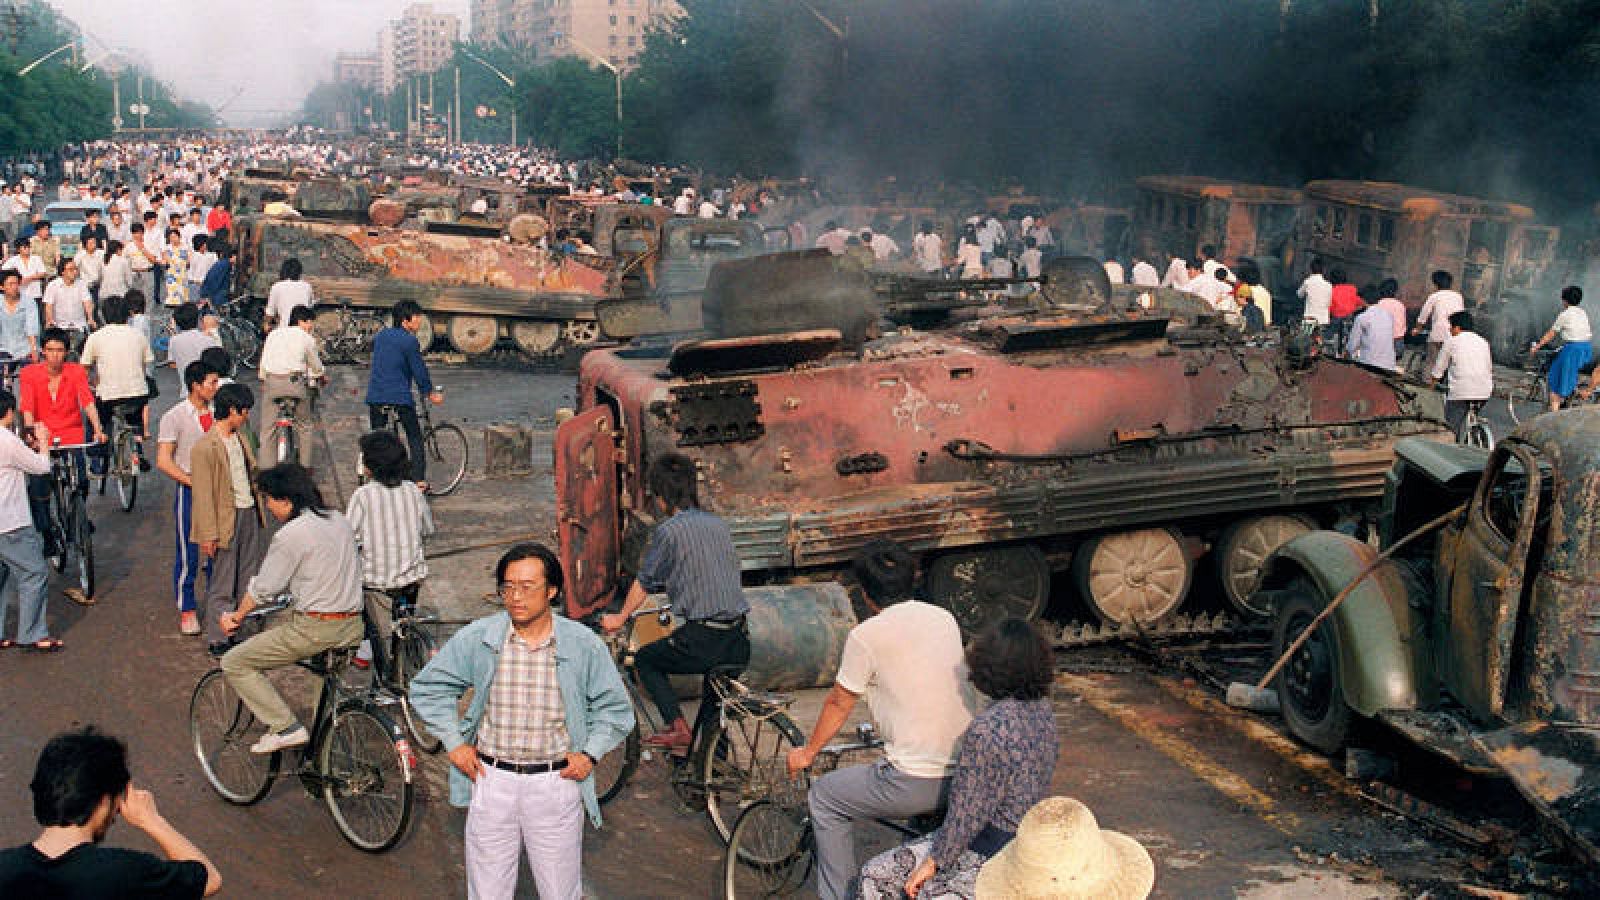 La matanza de Tiananmen en 1989, el ejercito chino reprimió violentamente las manifestaciones de los estudiantes